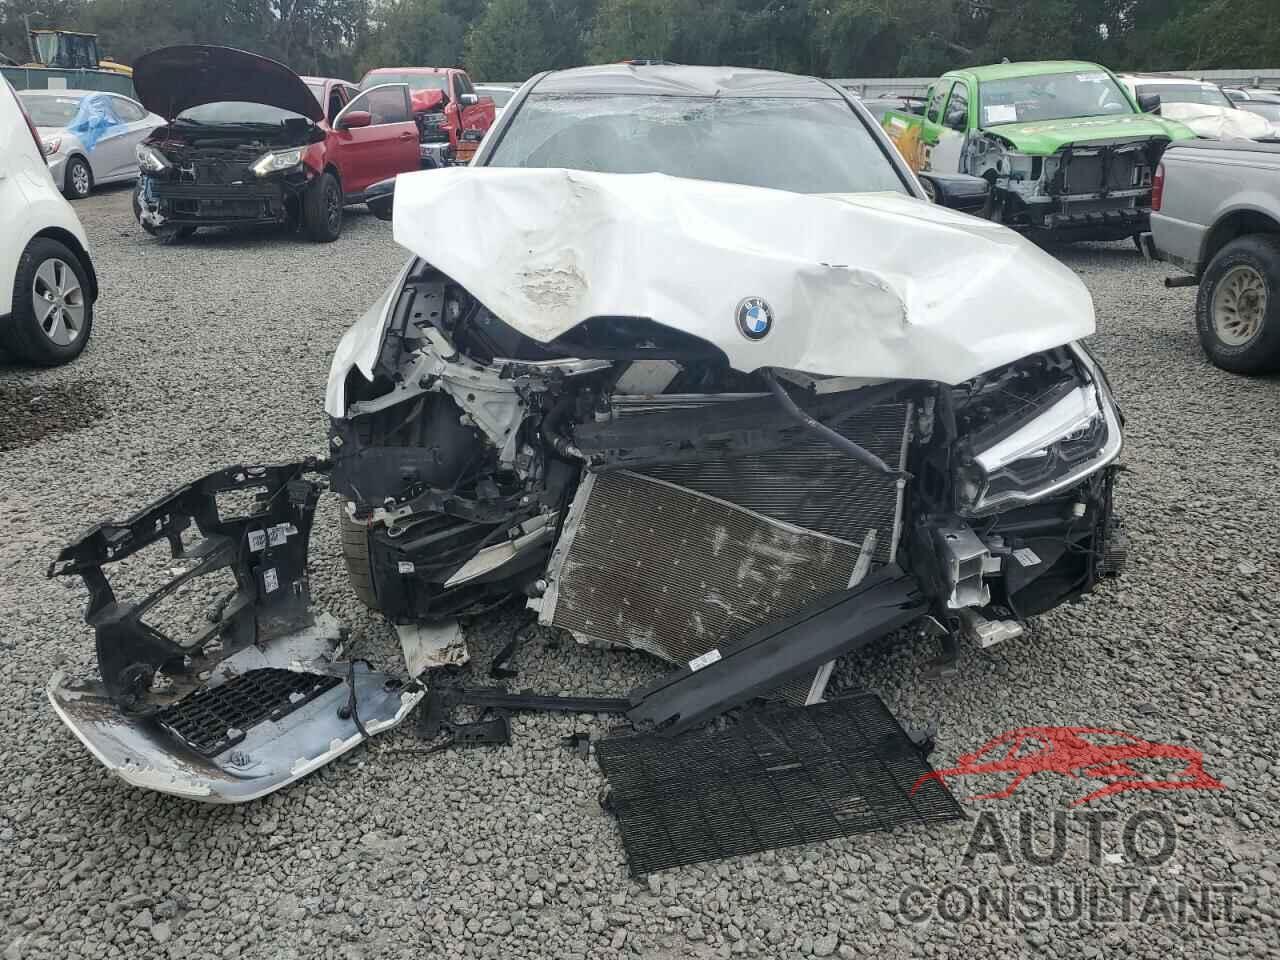 BMW M5 2019 - WBSJF0C57KB446950